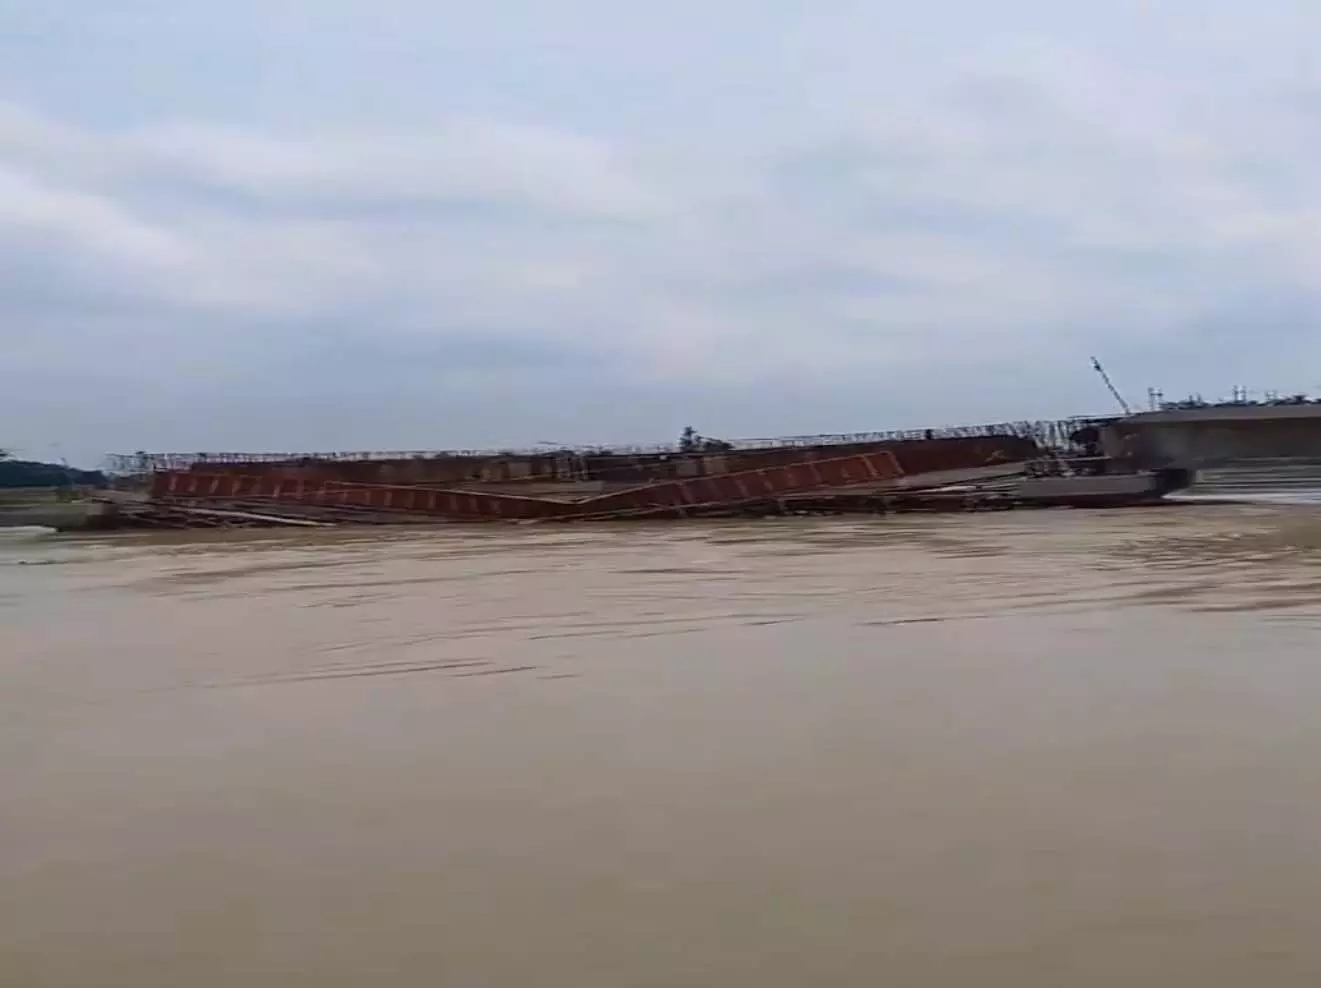 BREAKING NEWS: निर्माणाधीन पुल टूटकर पानी में बहा, देखें VIDEO...